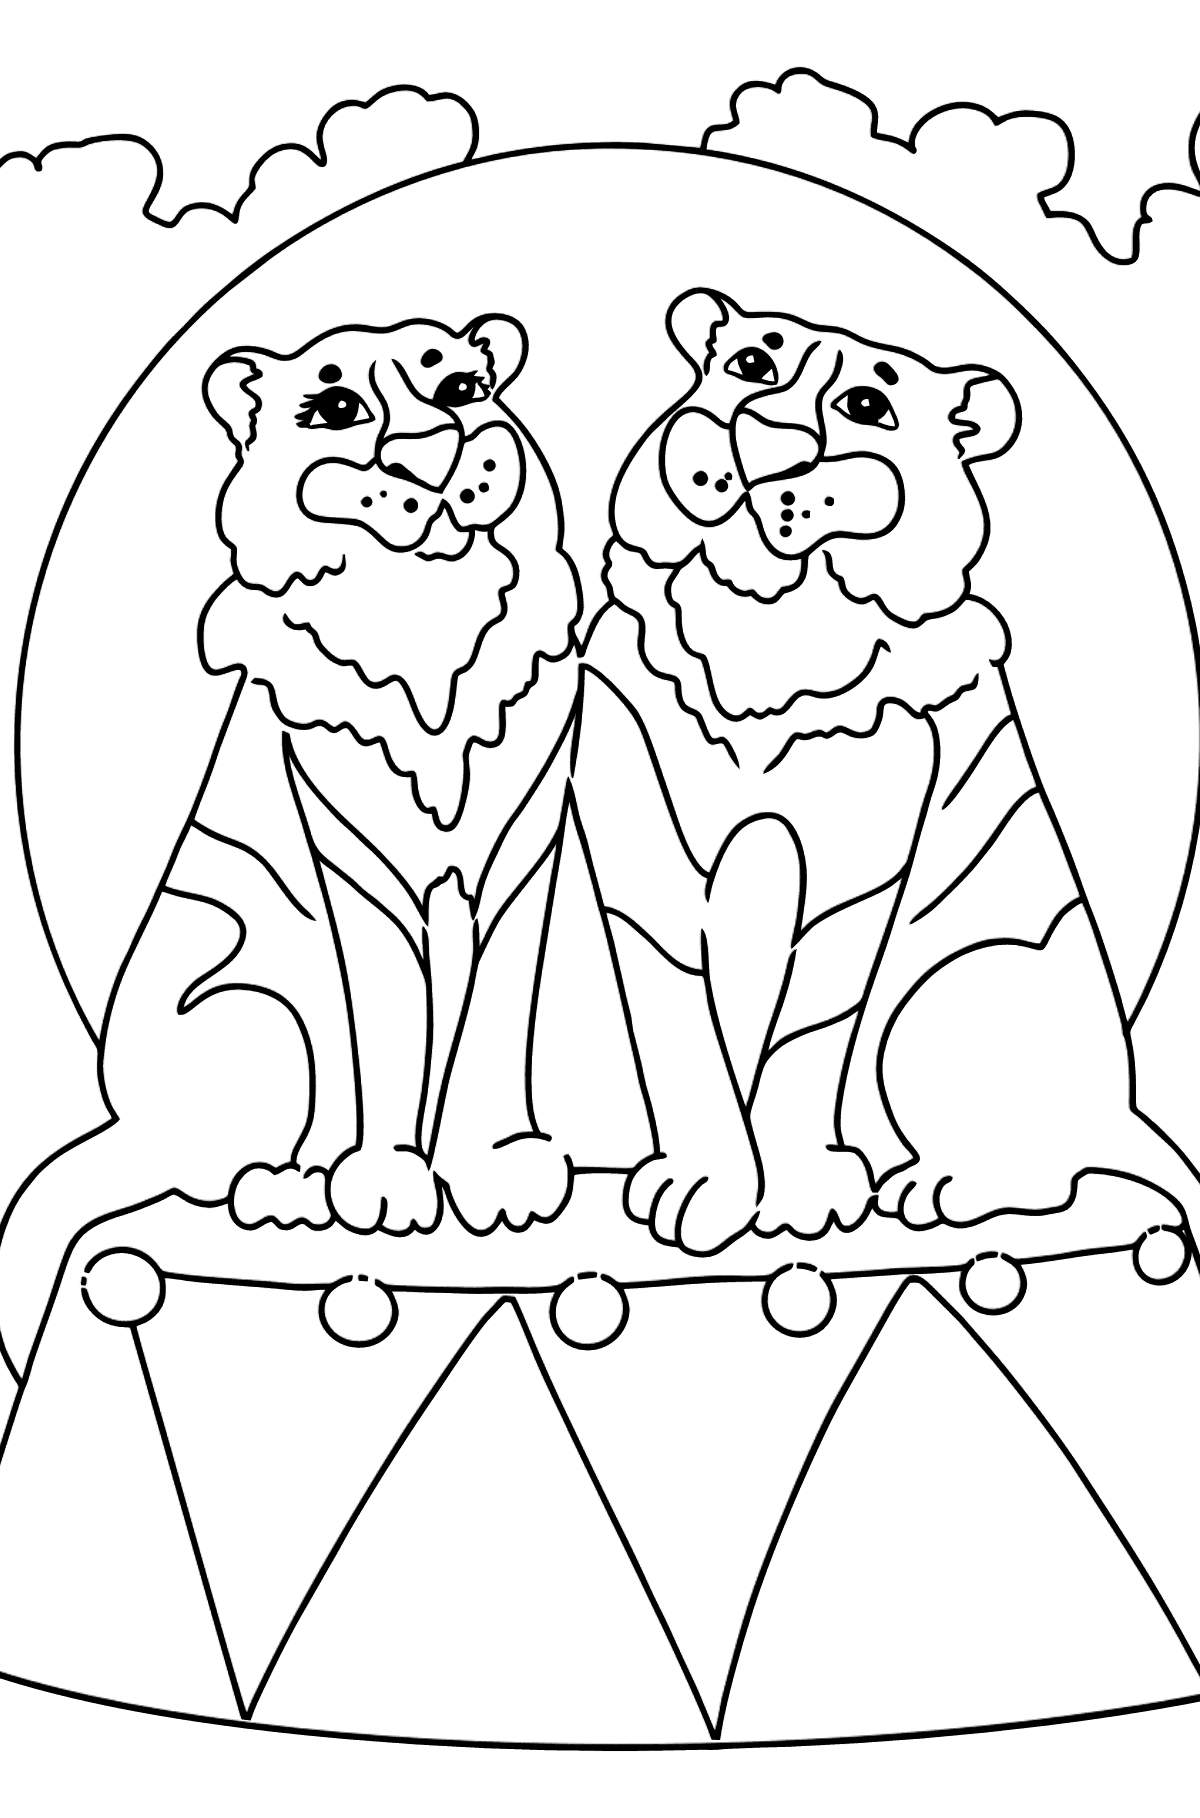 Раскраска Тигр для малышей - Картинки для Детей